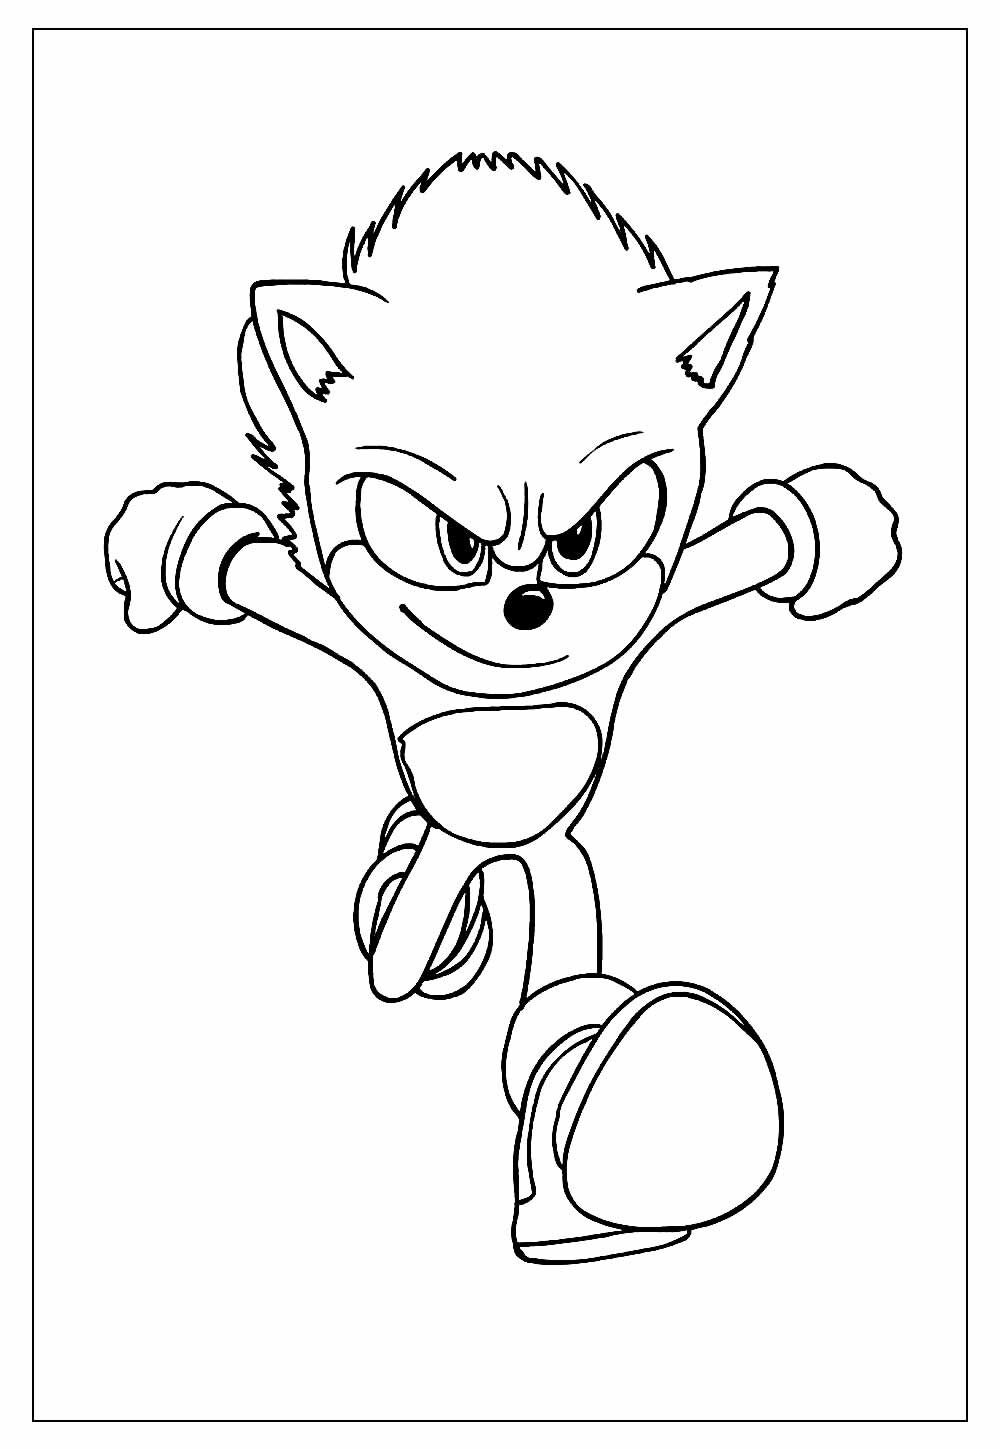 Desenho de Sonic para Colorir - Colorir.com